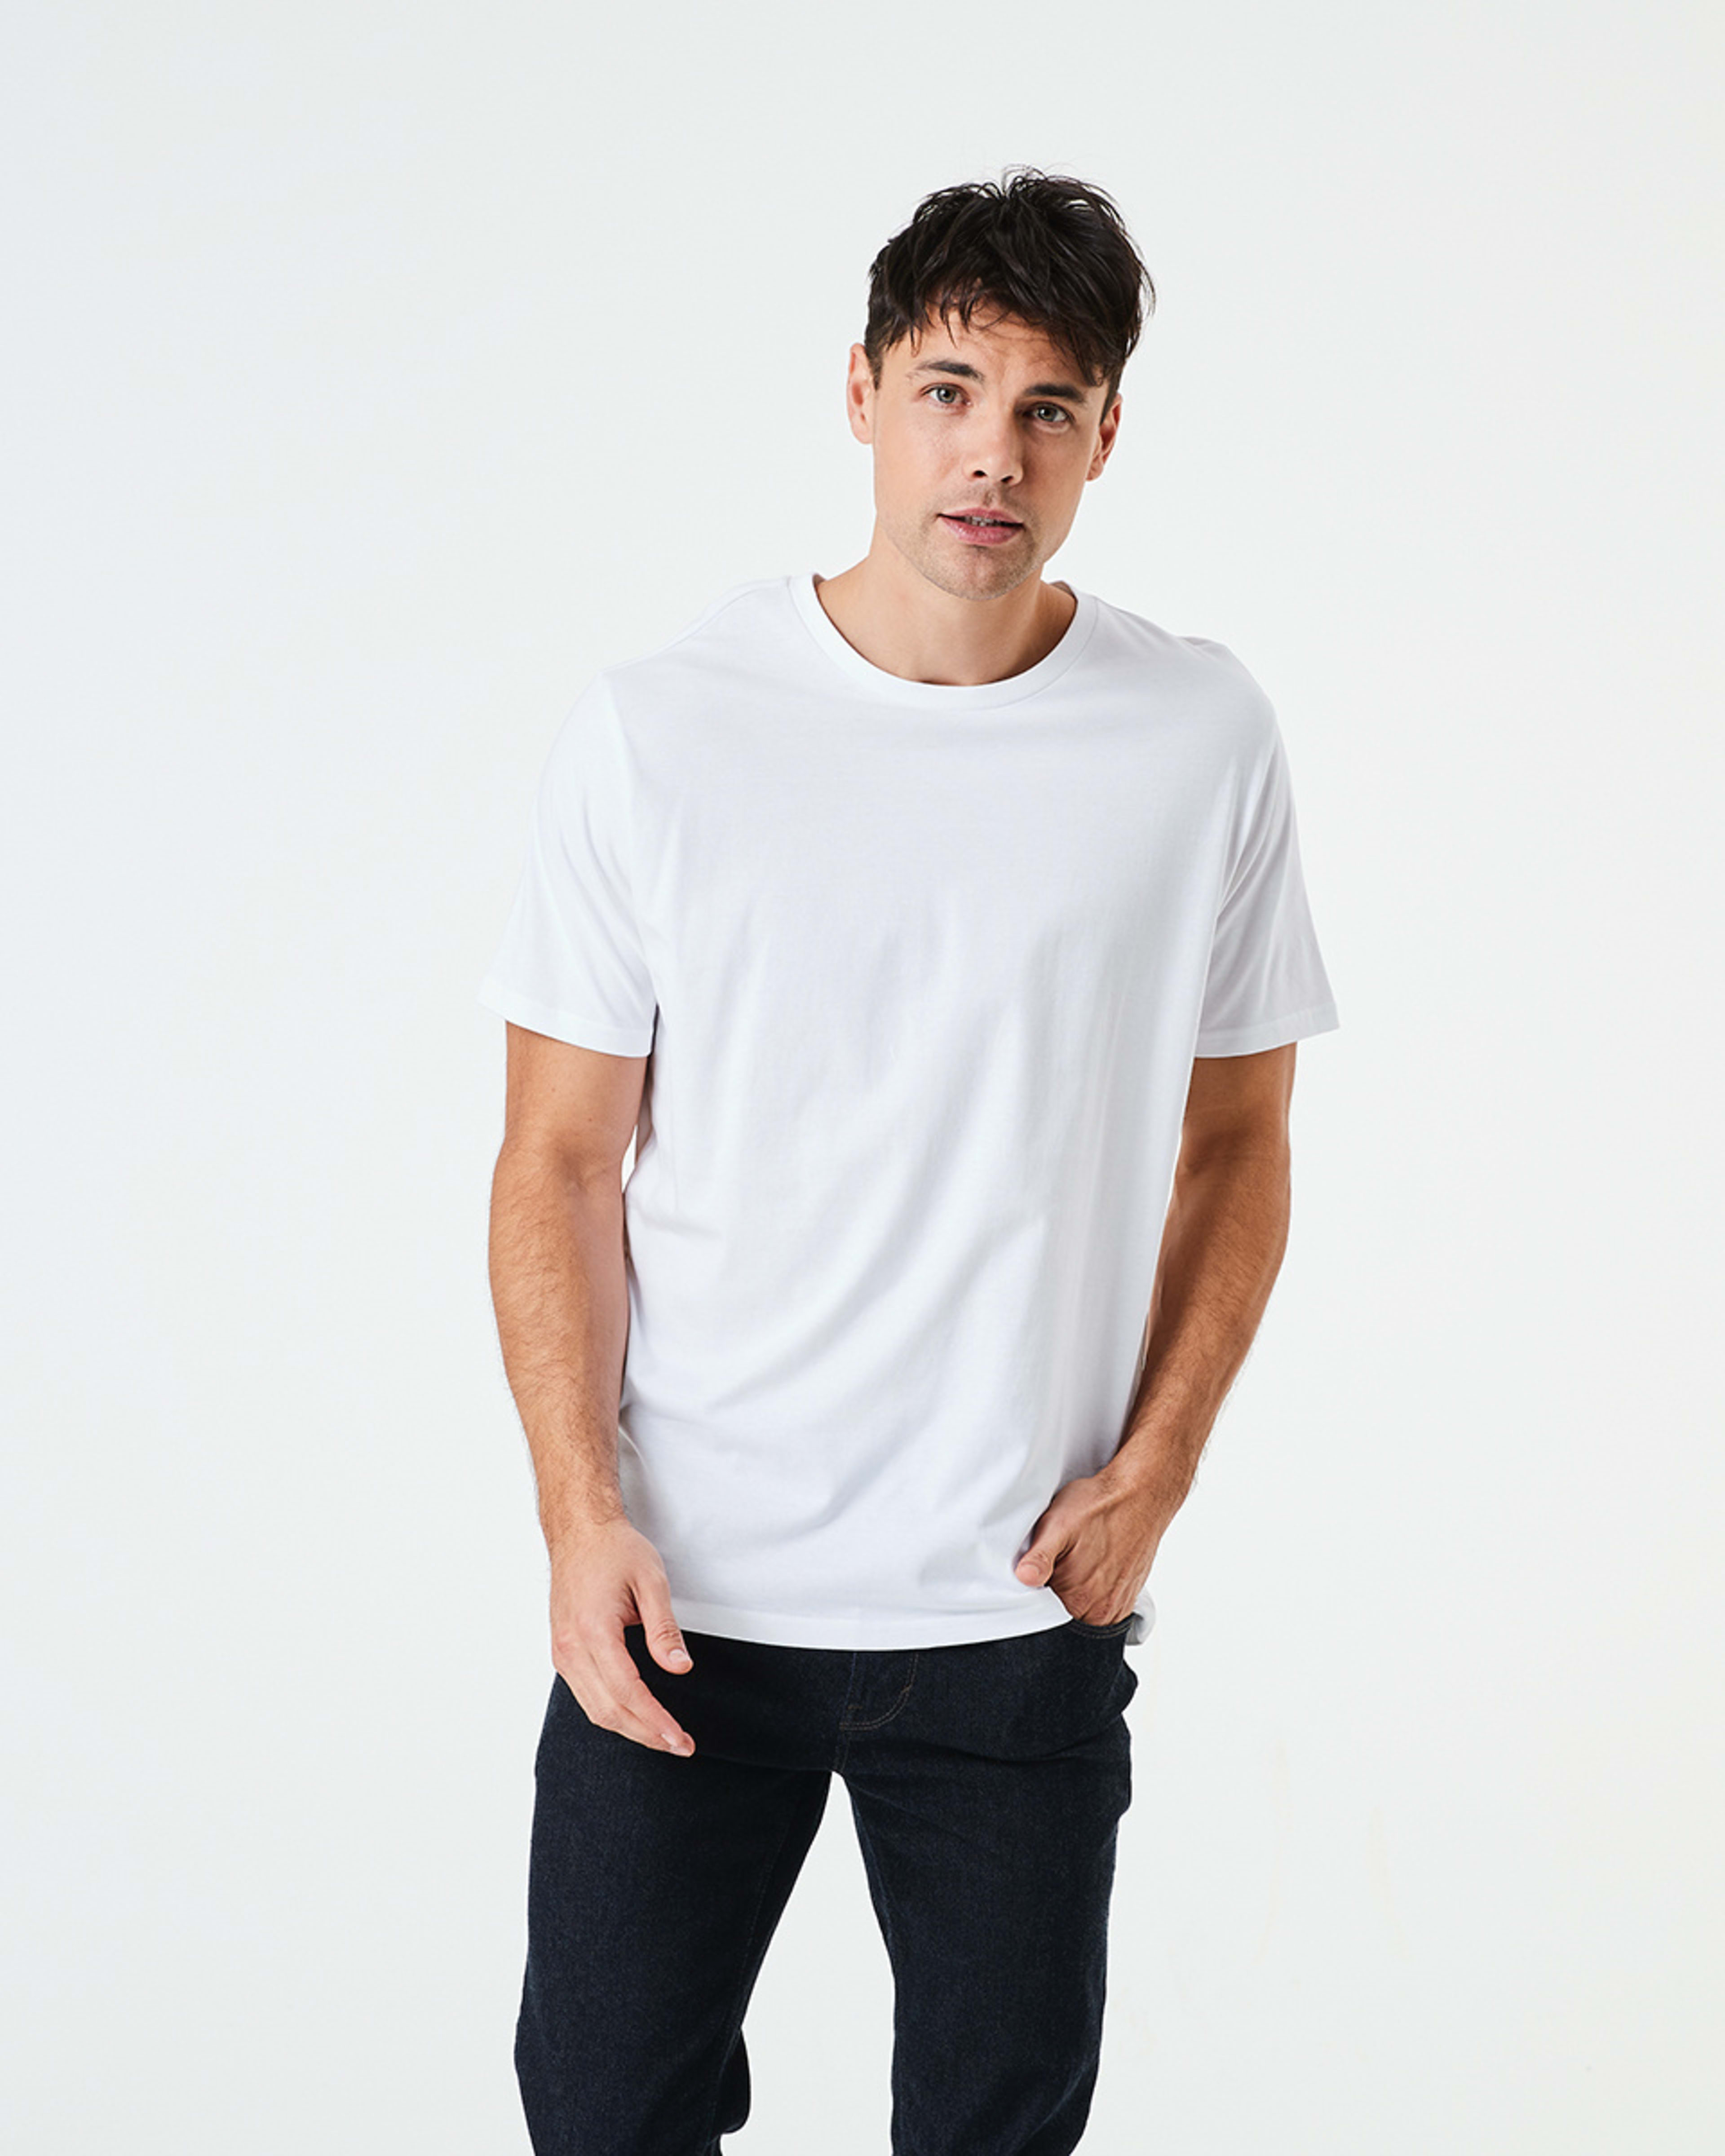 Australian Grown Cotton Crew Neck T-shirt - Kmart NZ